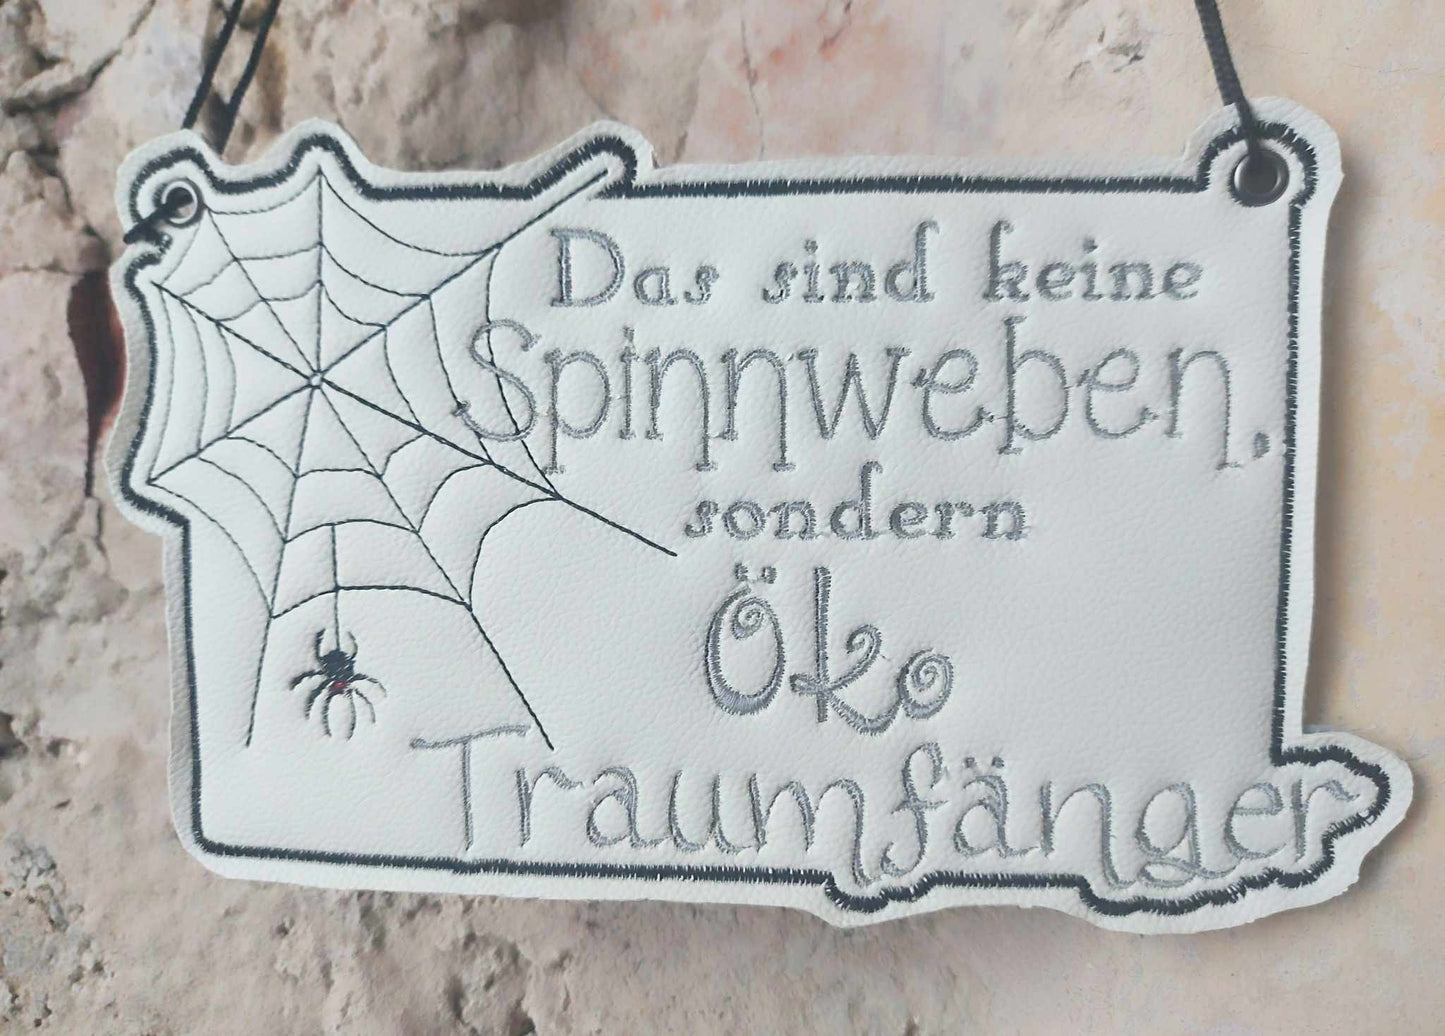 Schild Öko Traumfänger Spinnweben Set ab 13x18